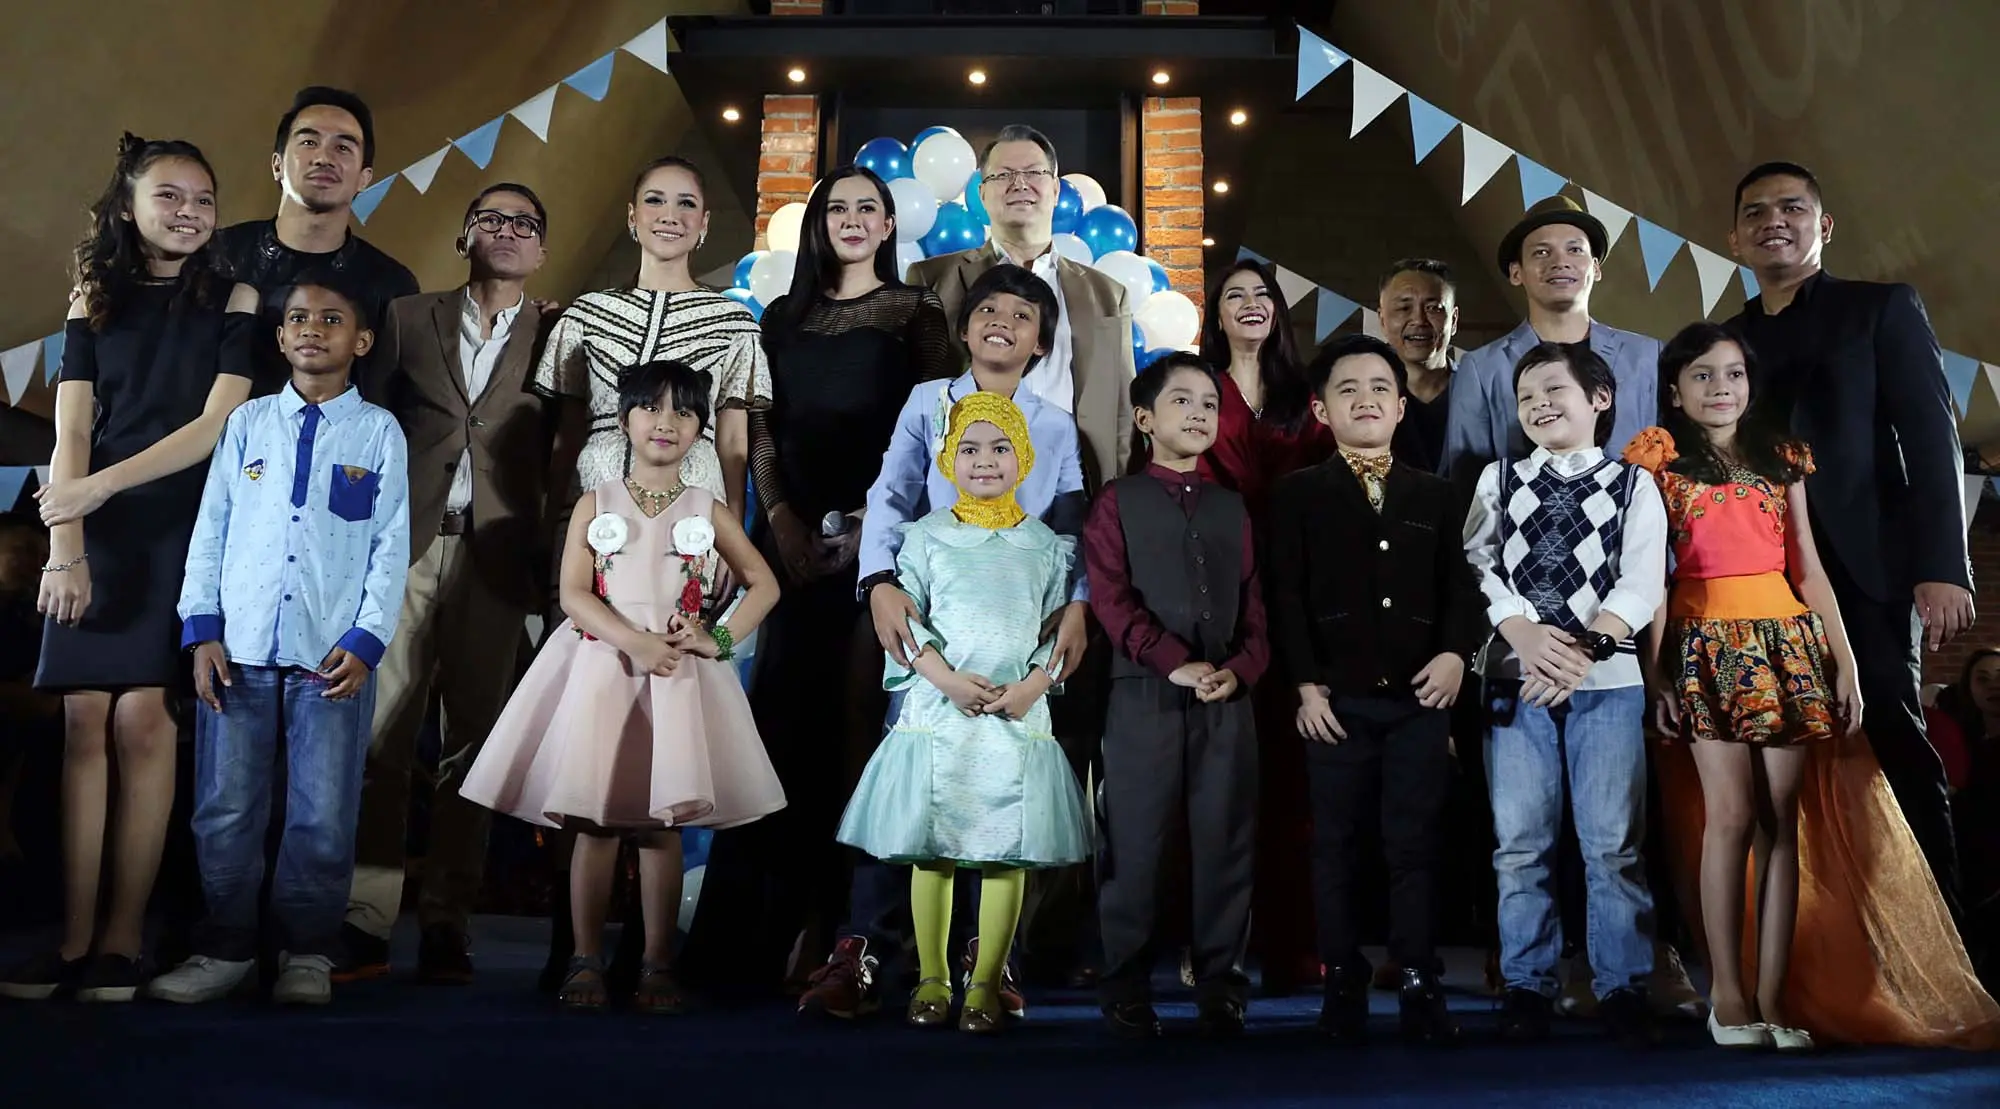 Pertama kalinya film Surat Kecil Untuk Tuhan diputar. Acara berlangsung di CGV Blitz Grand Indonesia, Jakarta Pusat, Selasa (20/6/2017) malam. Pemutaran perdana di depan para wartawan, tamu undangan dan penonton terbatas. (Deki Prayoga/Bintang.com)